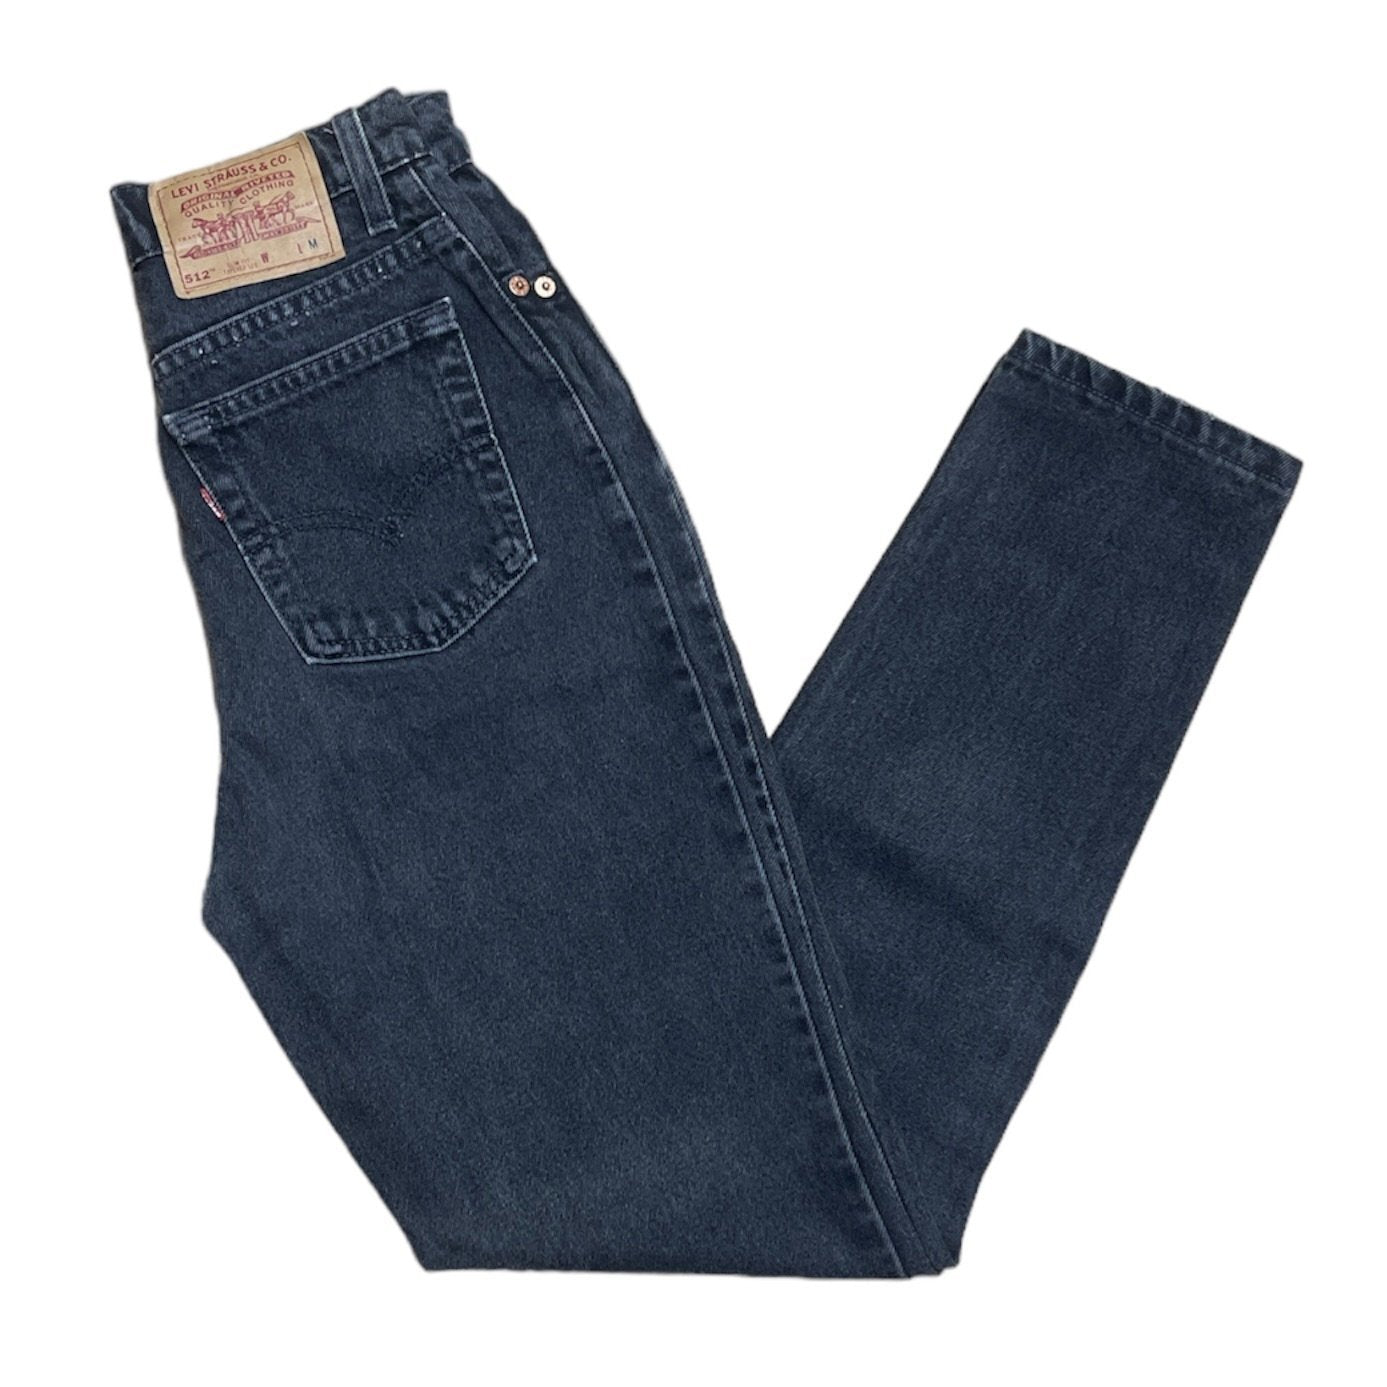 Vintage Levis 512 Grey/Black Jeans (W26/L30)